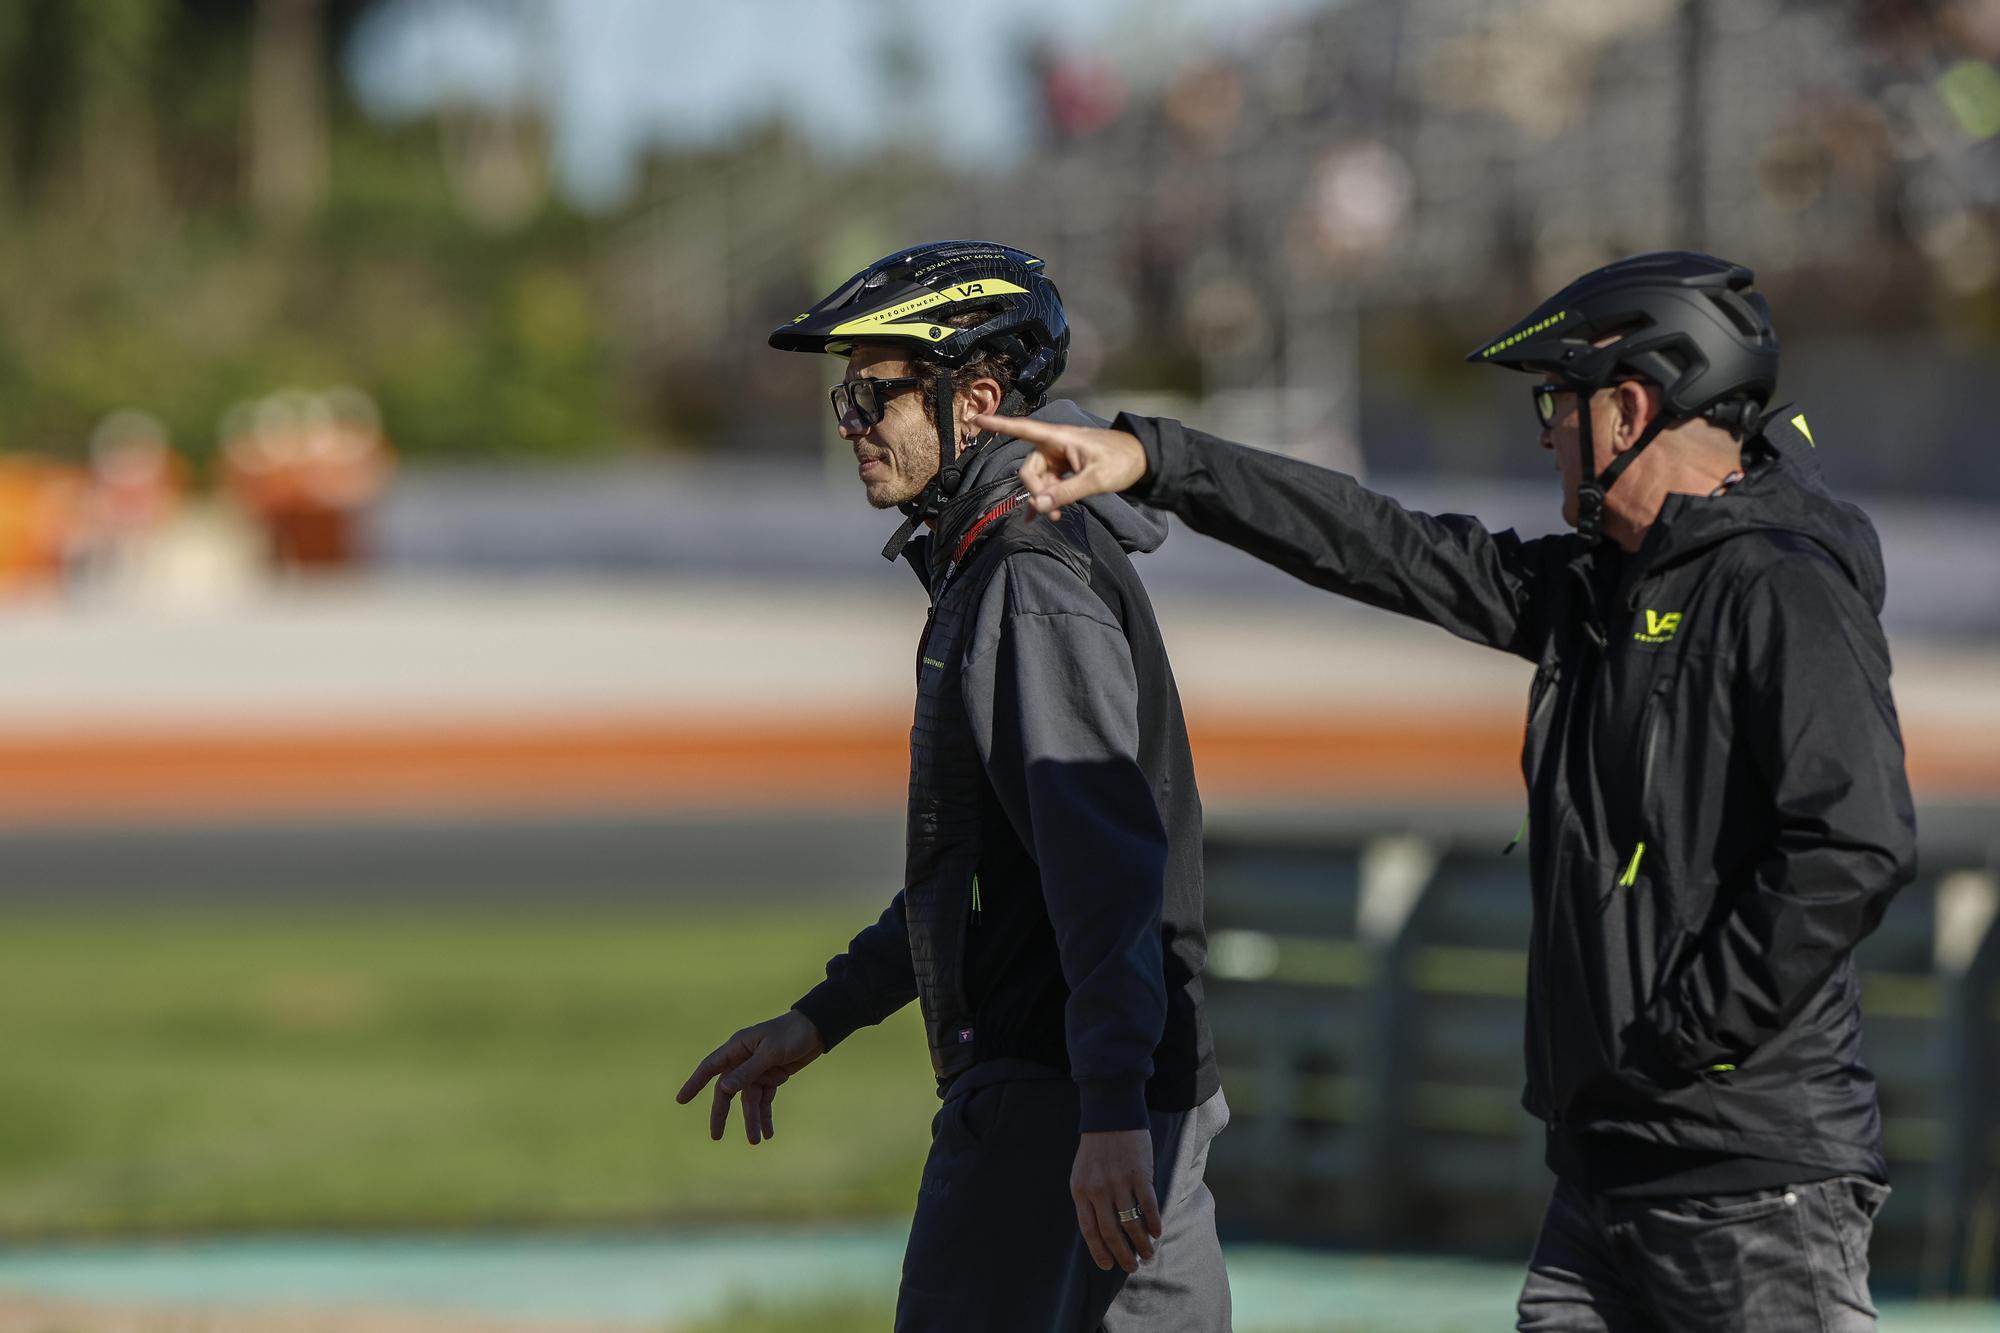 Rossi Vuelve al Circuit Ricardo Tormo